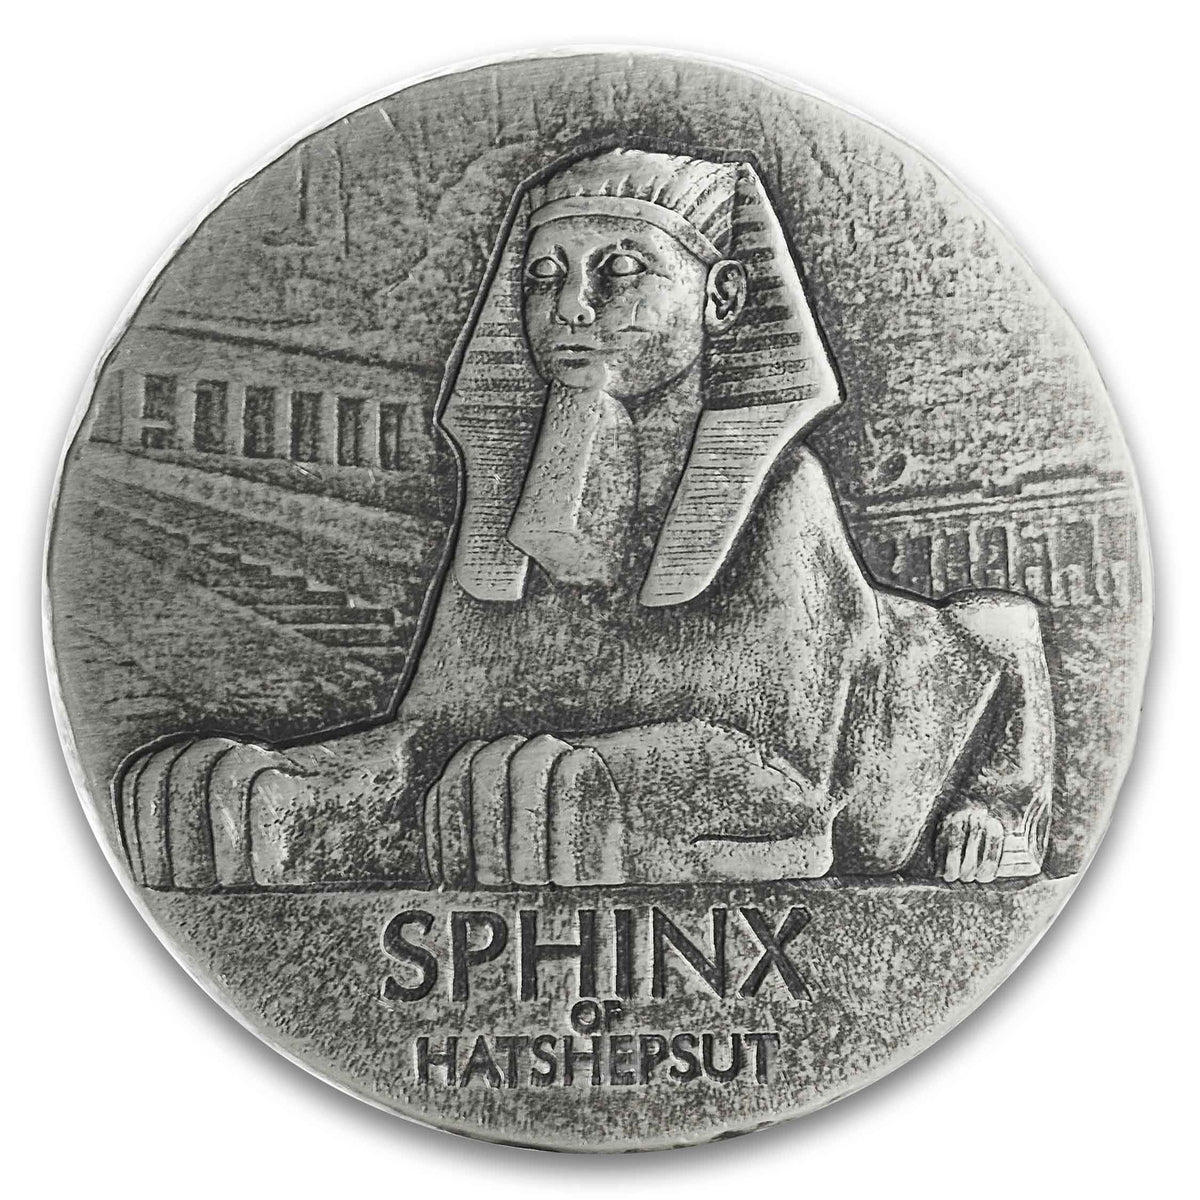 2019 Republic of Chad 5 oz Silver Sphinx of Hatshepsut (BU)